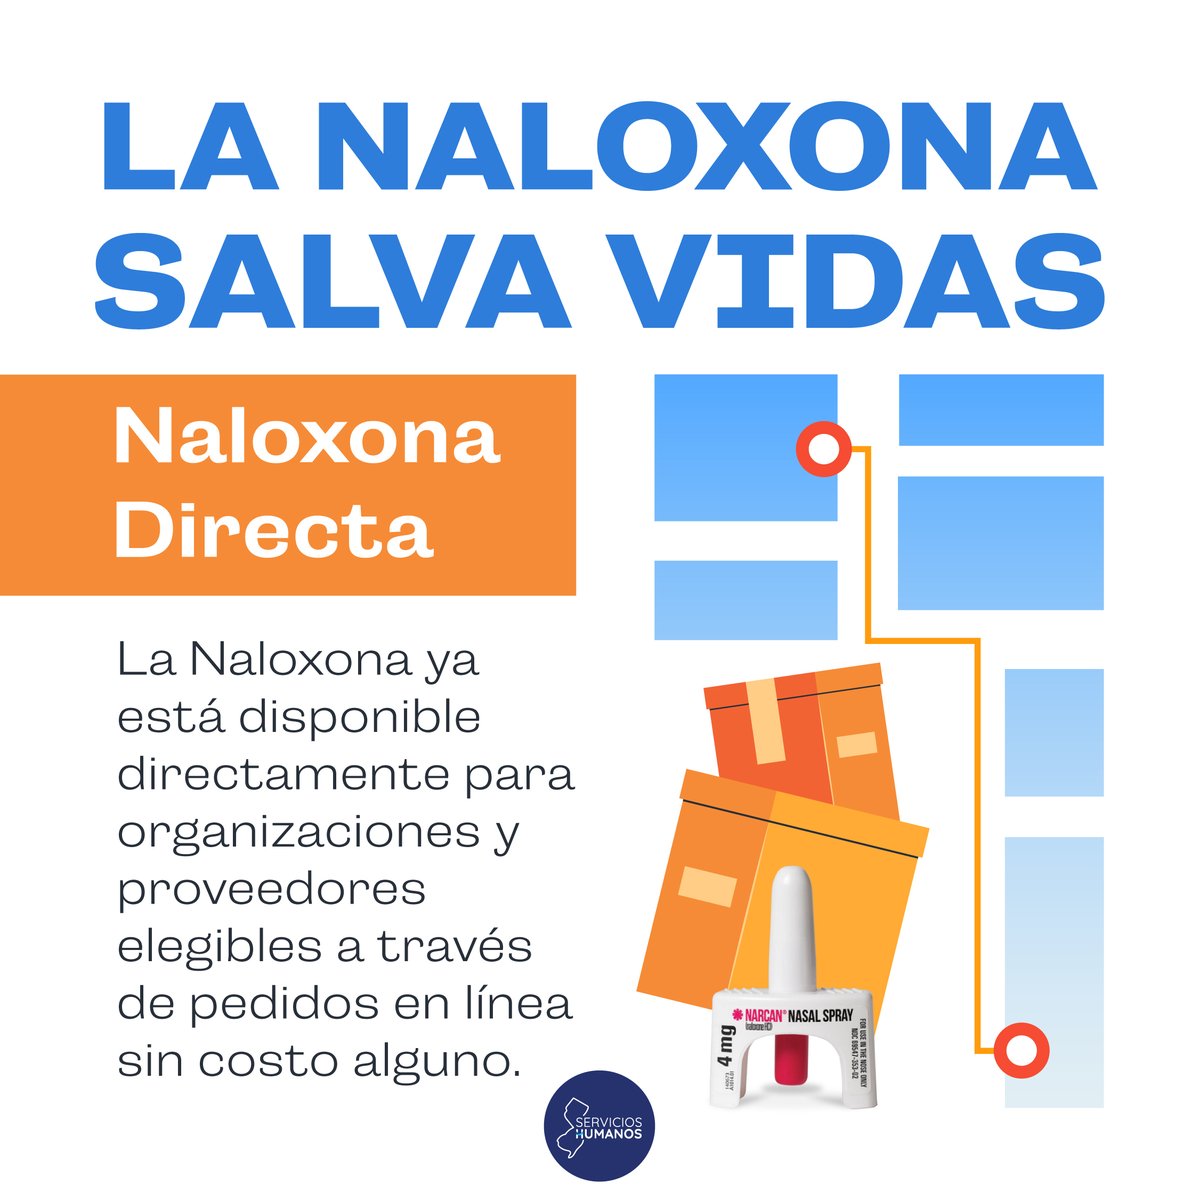 La #NaloxonaDirecta de @NJDHS ofrece a agencias de primeros auxilios y de reducción de daños la posibilidad de solicitar envíos directos de naloxona, en cualquier momento, sin costo. 💻Regístrese aquí: bit.ly/3bSnEgC #StopOverdoses #Naloxona